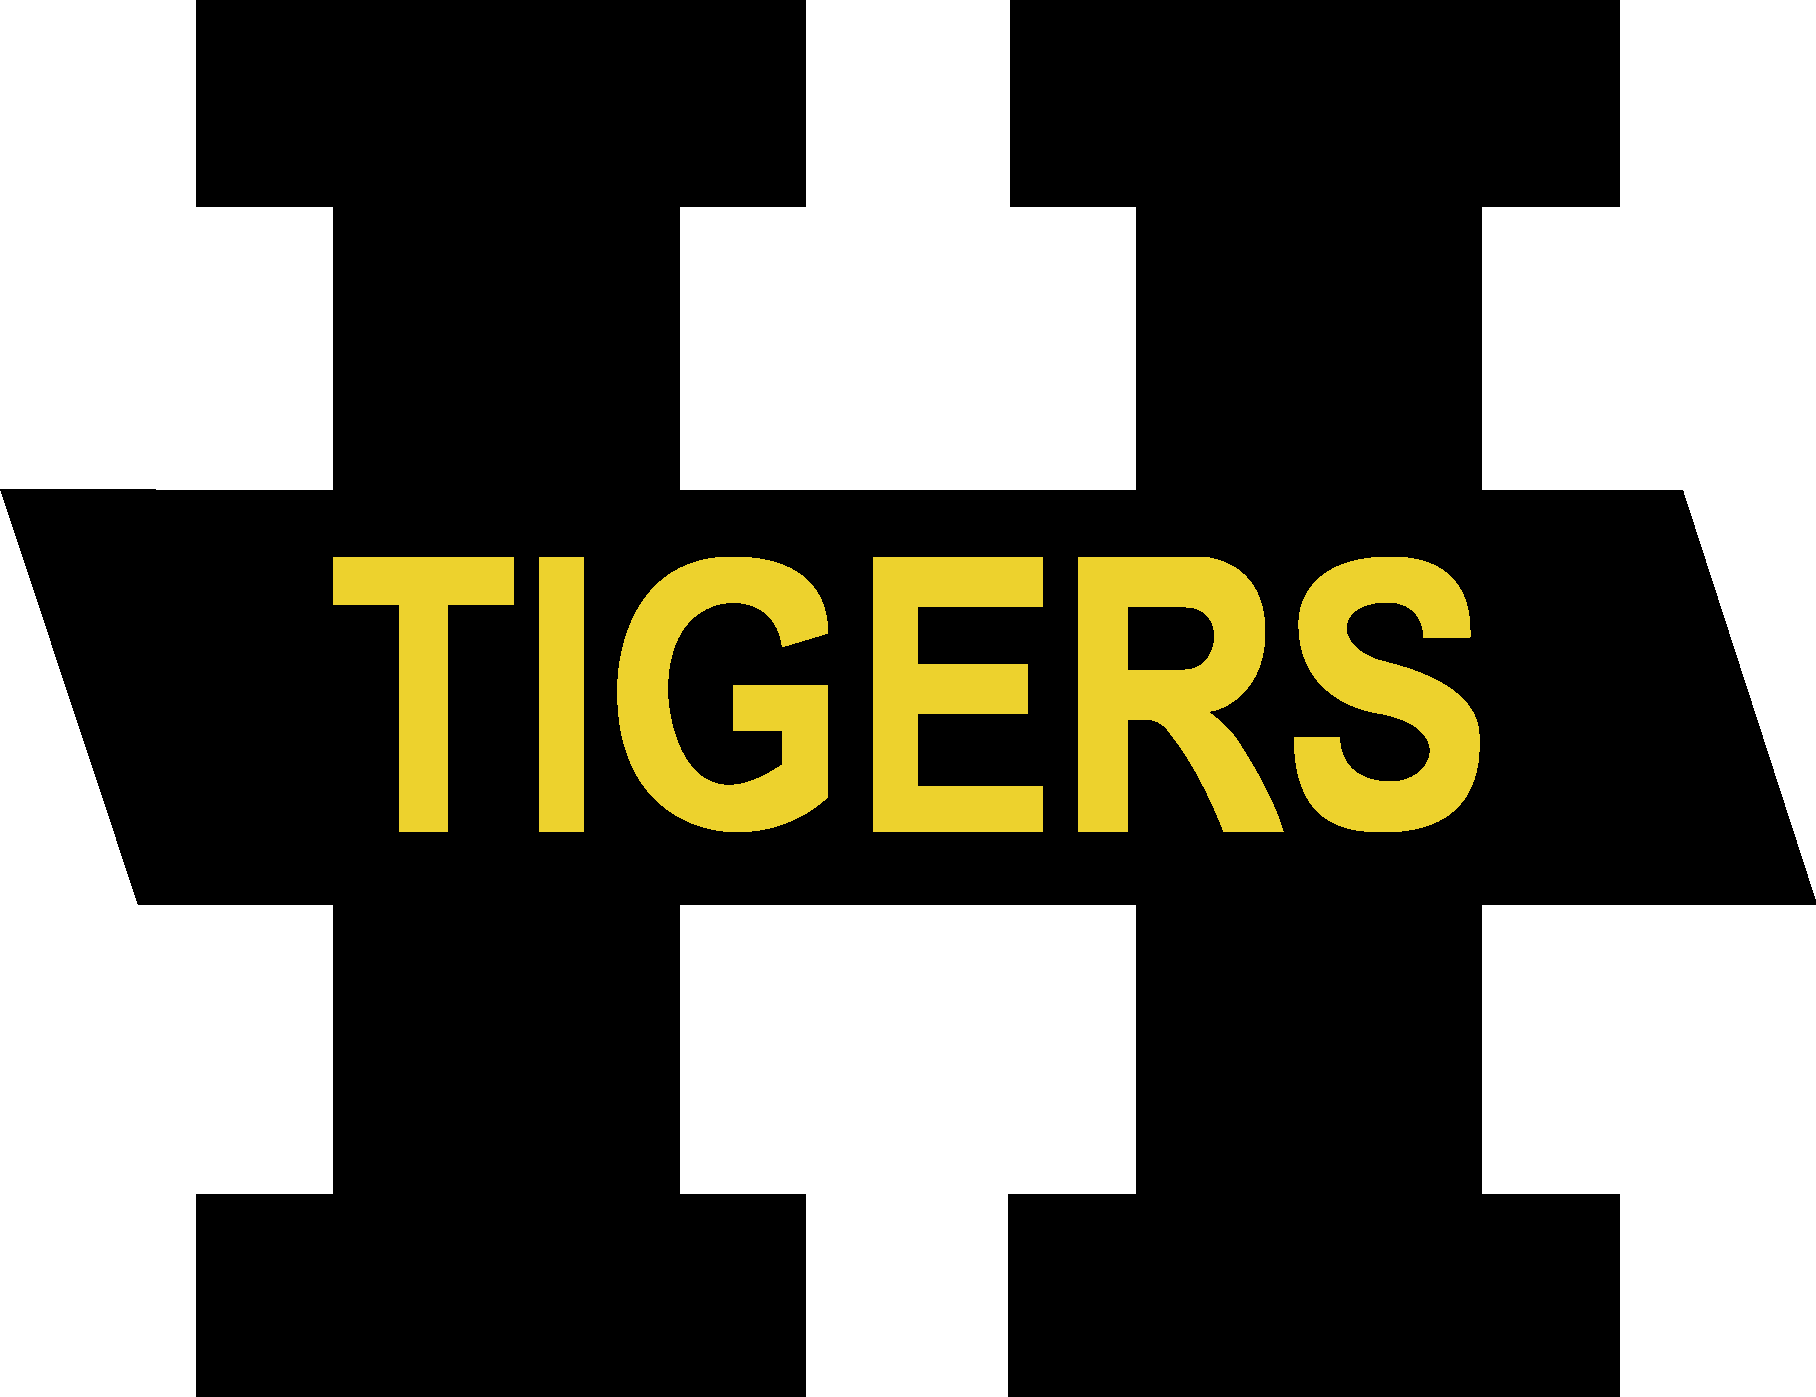 Hamilton Tigers Vector Logo - Download Free SVG Icon